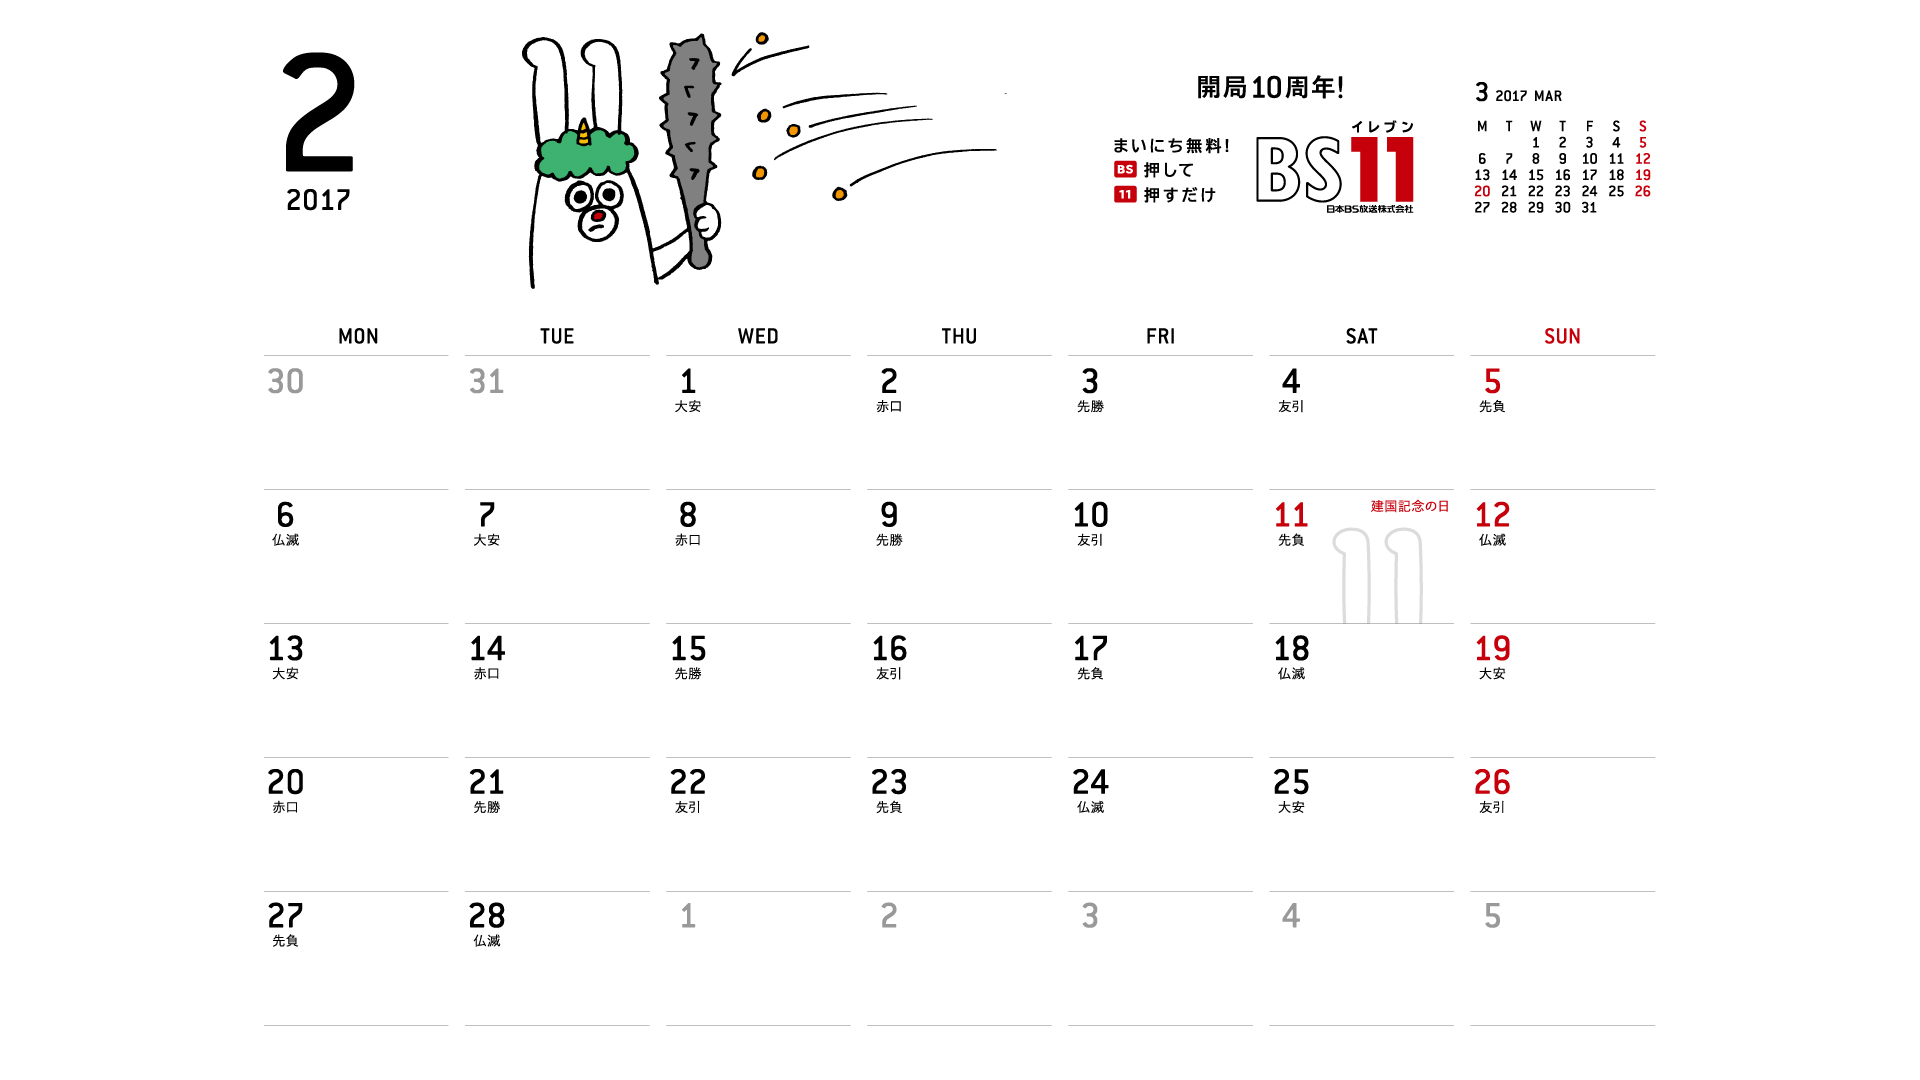 じゅういっちゃんのデジタルカレンダー17年02月 Bs11 イレブン いつでも無料放送